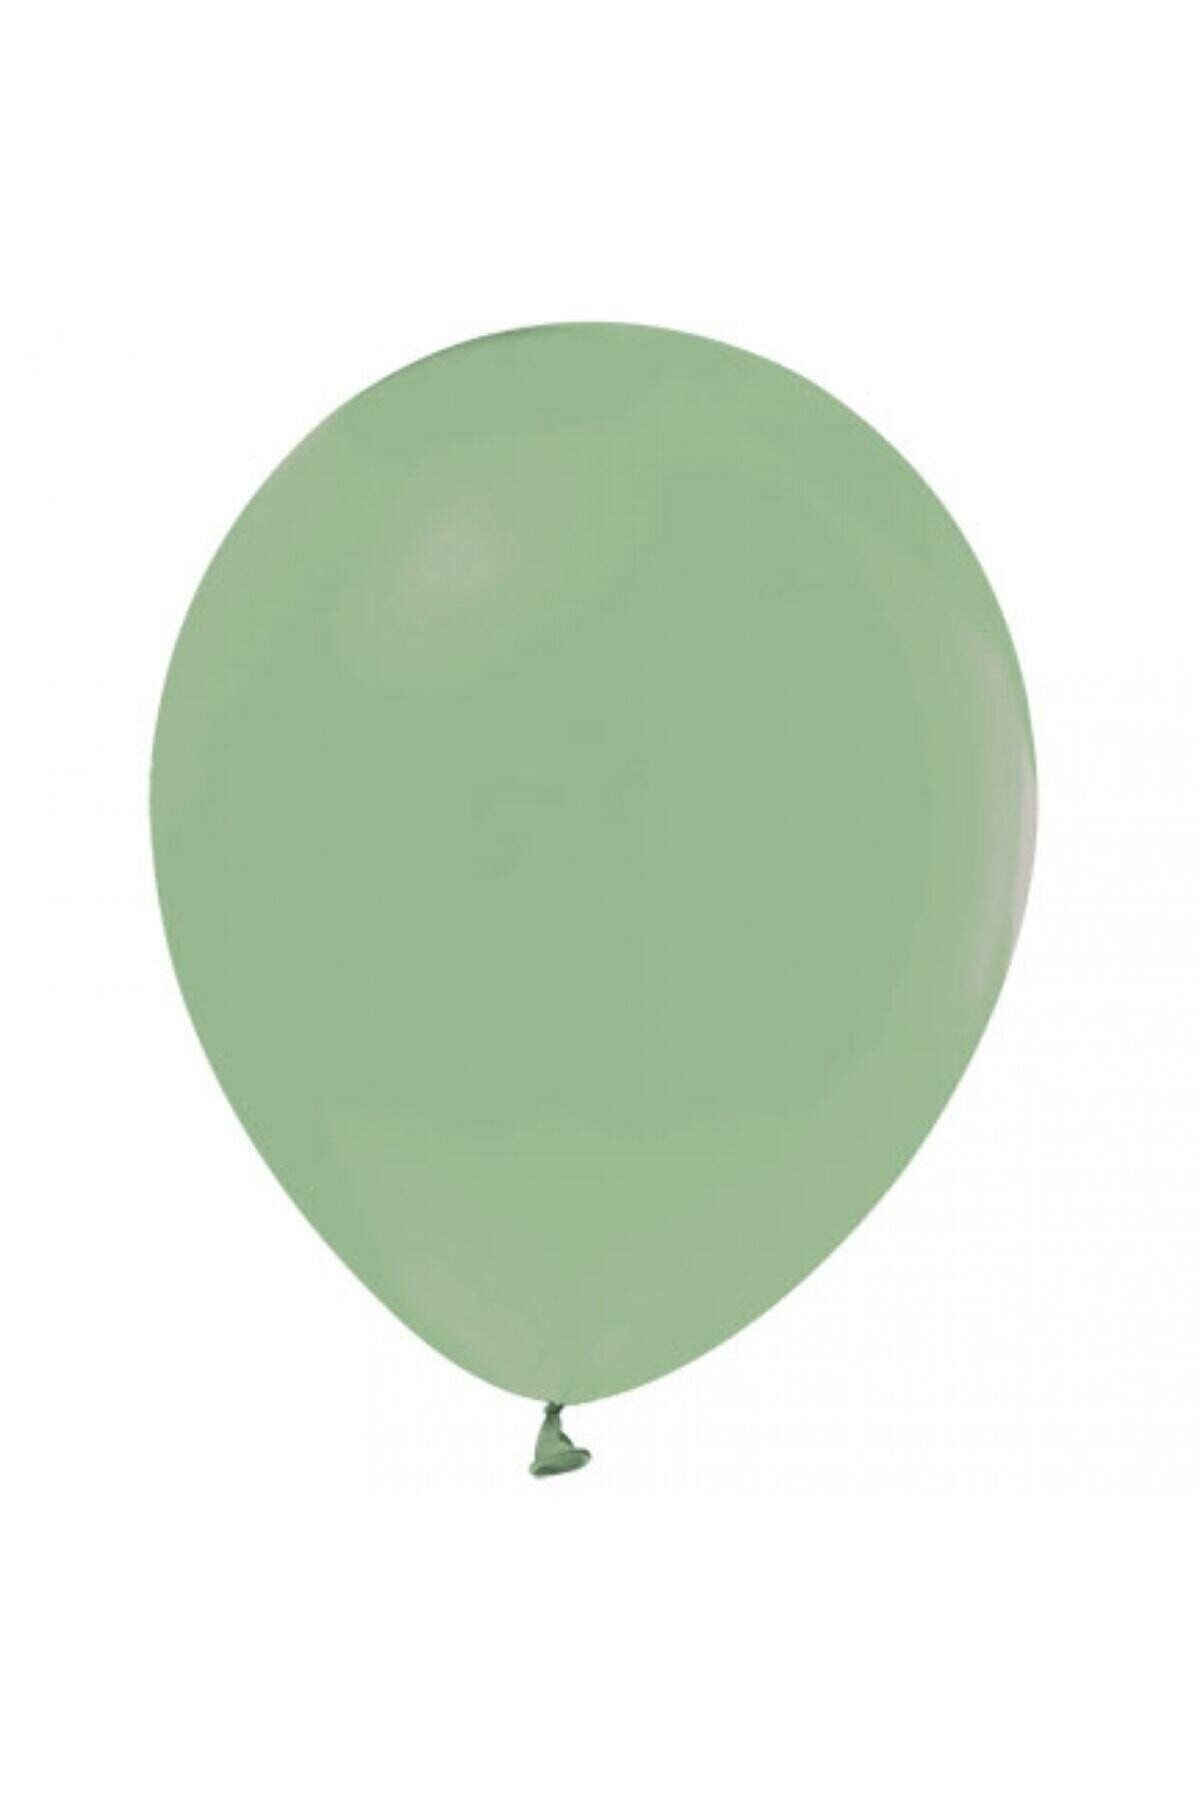 HKNYS 100 Adet Kuf Yeşili Soft Renk Pastel Balon-5 Metre Balon Zıncırı